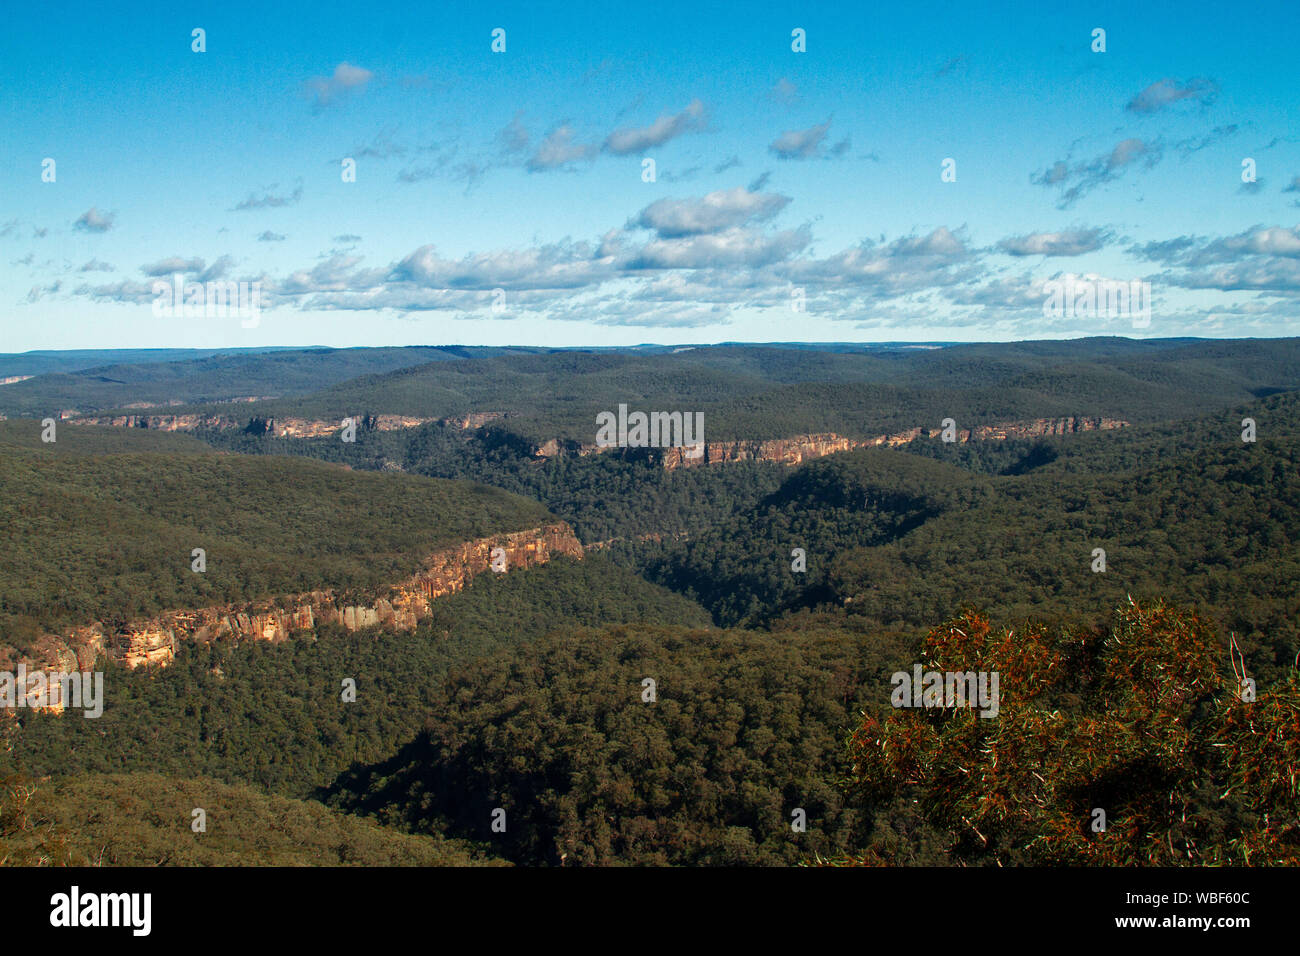 Vue imprenable sur paysage de collines boisées de Great Dividing Range rompu par gorges escarpées qui s'étend à l'horizon lointain et ciel bleu , NSW Australie Banque D'Images